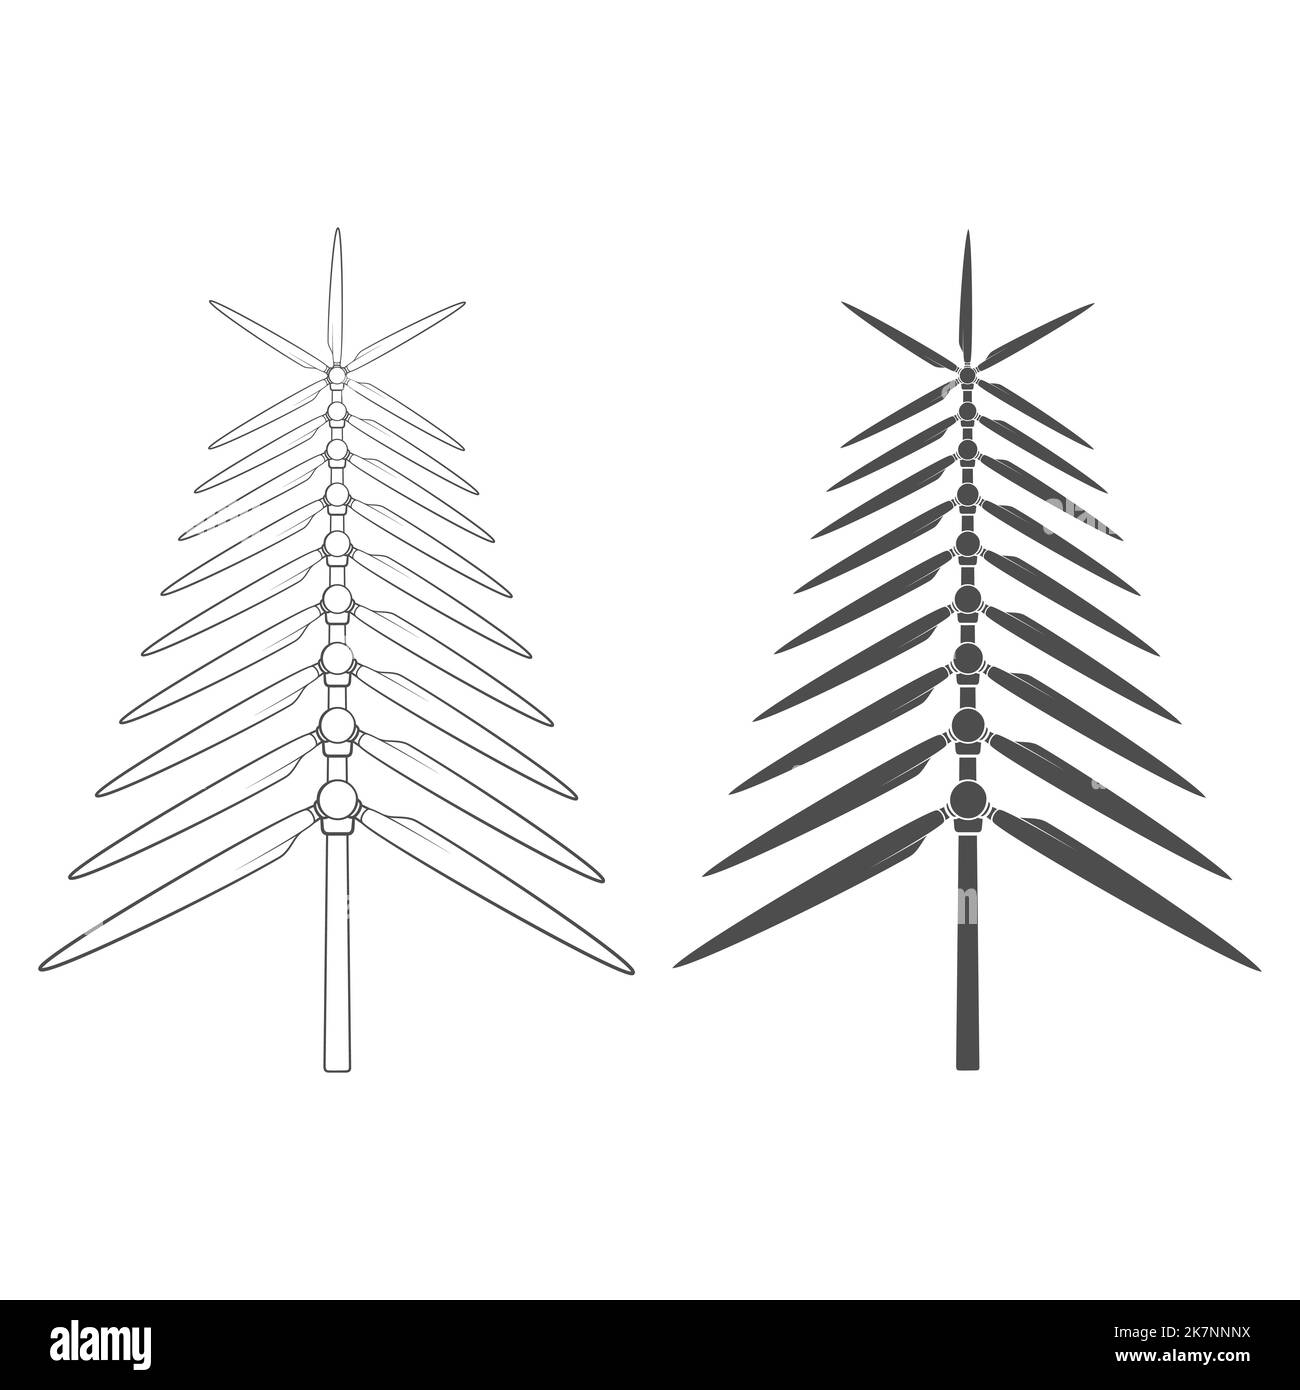 Jeu d'illustrations noir et blanc avec arbre de Noël en hélices, pales de moulin à vent, éolienne. Objets vectoriels isolés sur fond blanc Illustration de Vecteur